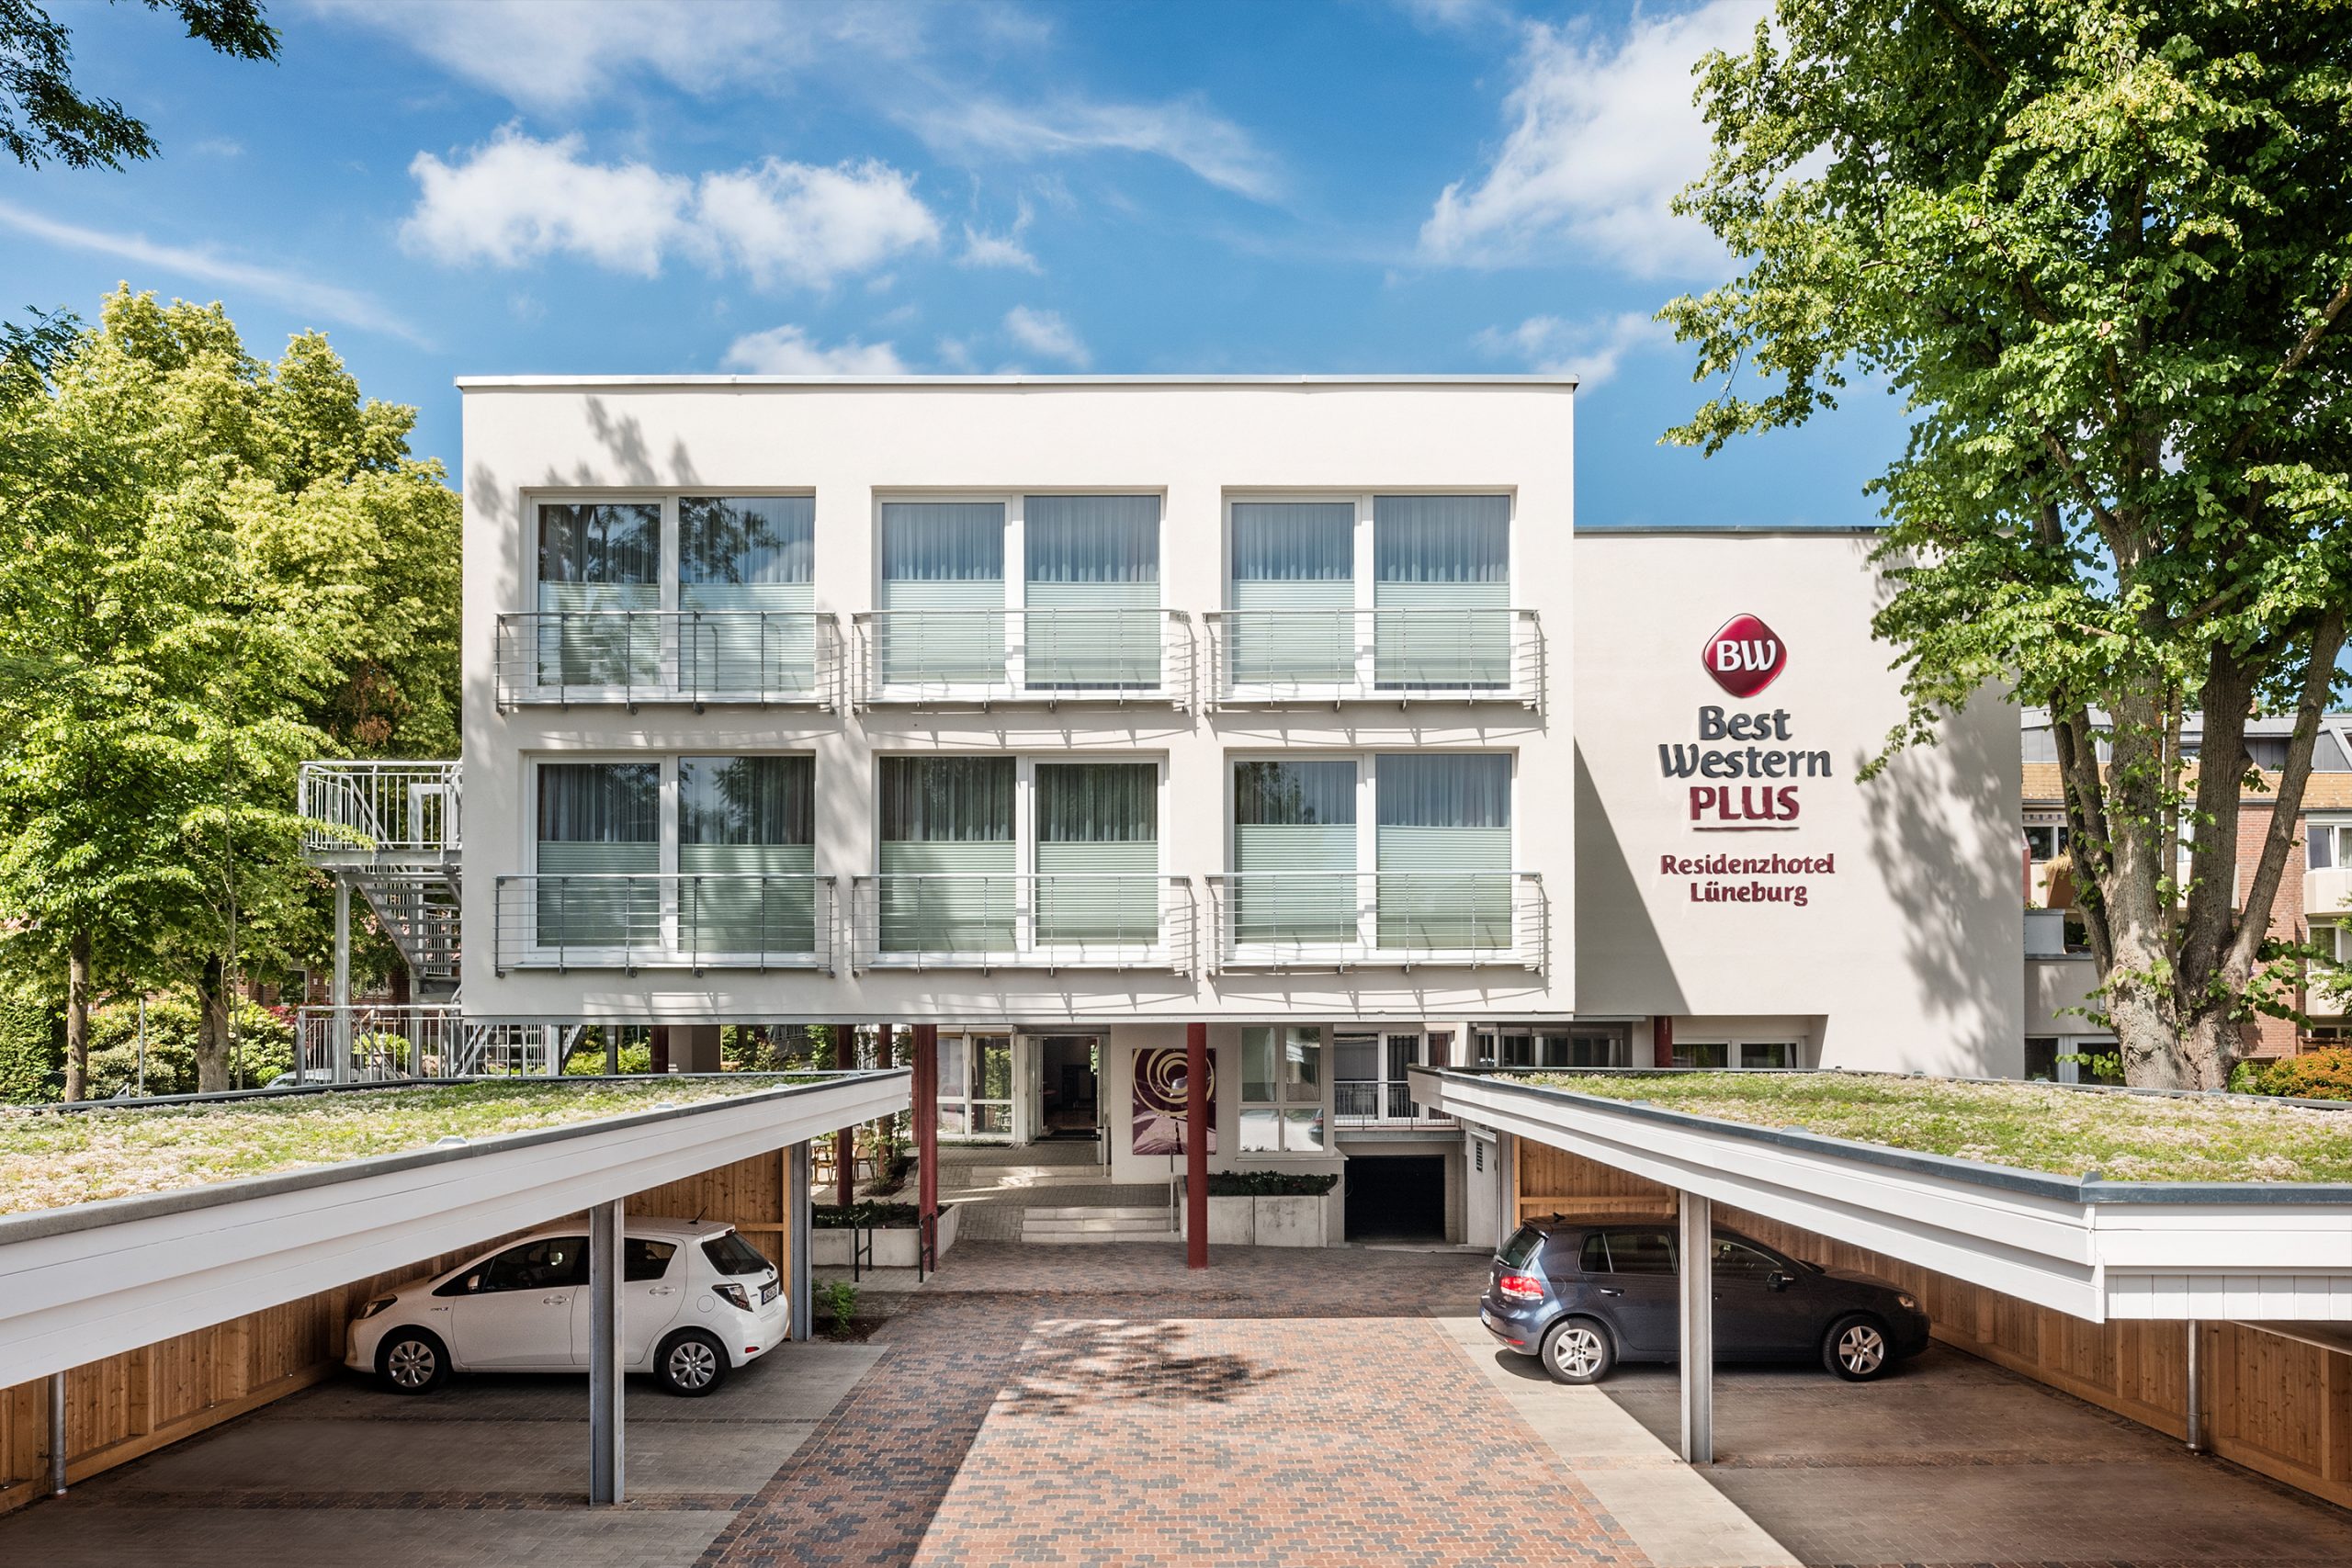 Best Western Hotels in Deutschland sind Preis-Champions 2020